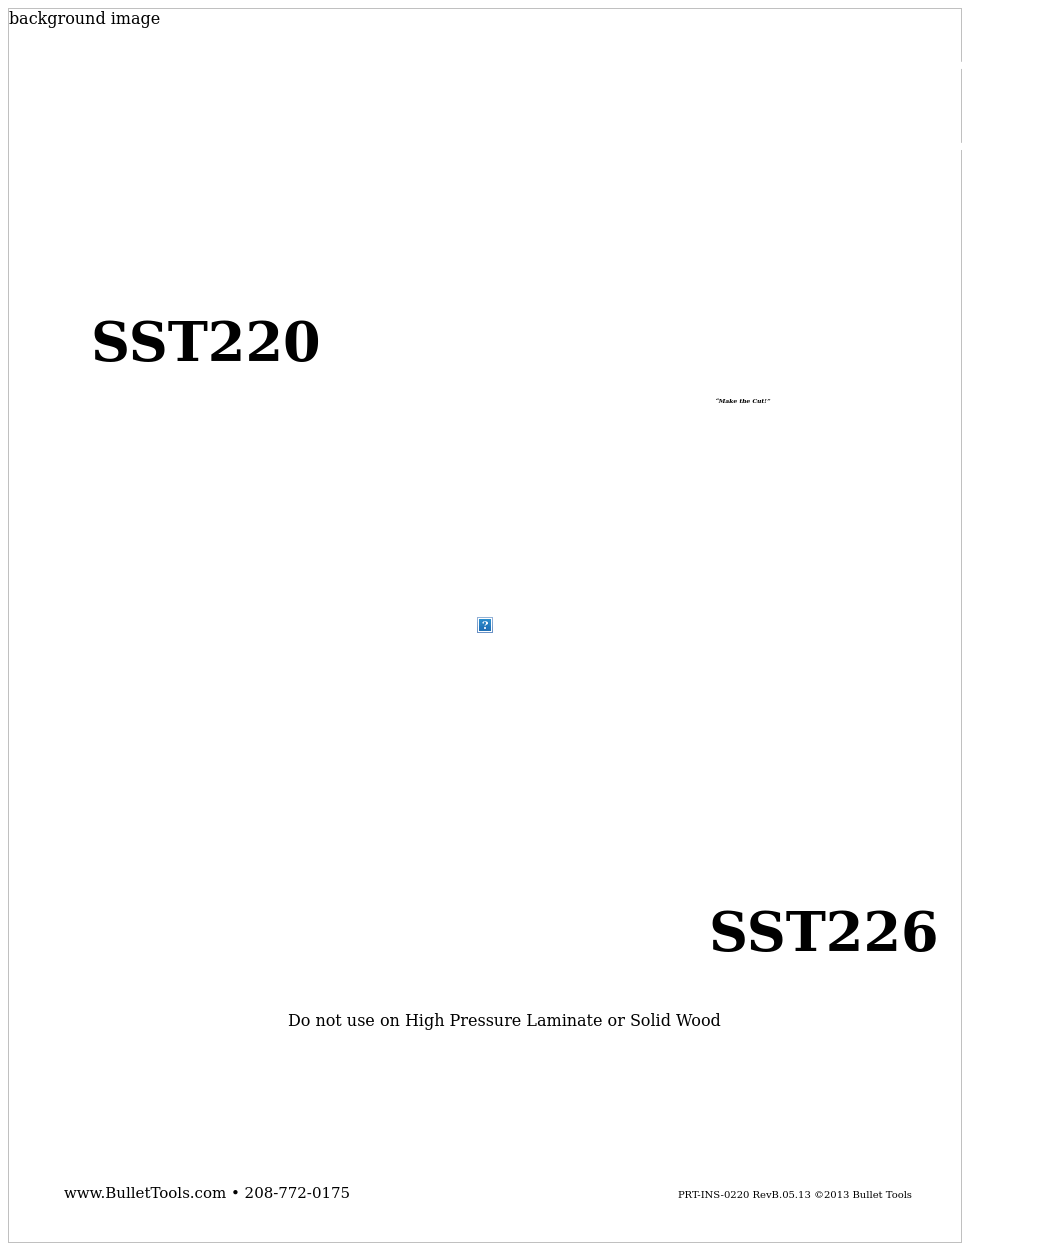 SST226